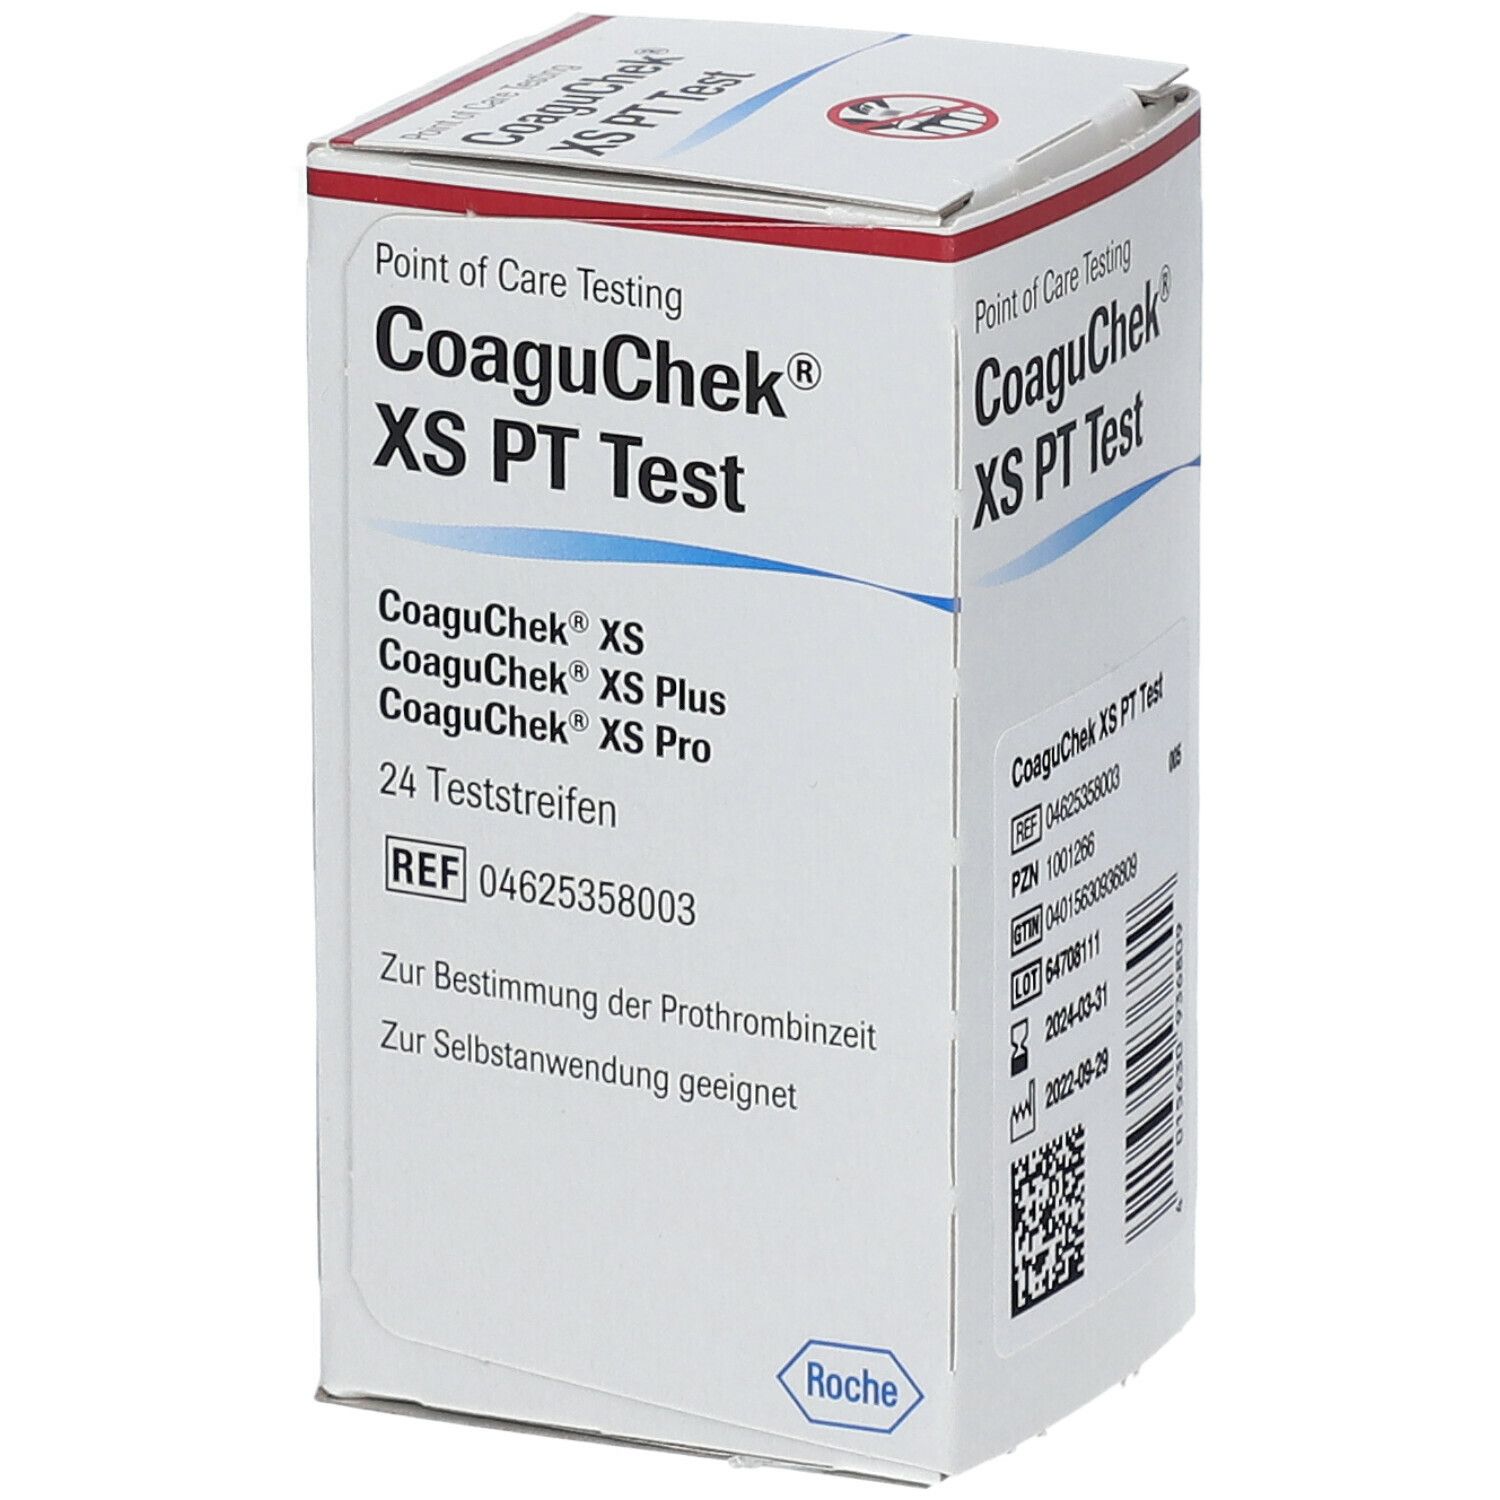 CoaguChek® XS PT Teststreifen